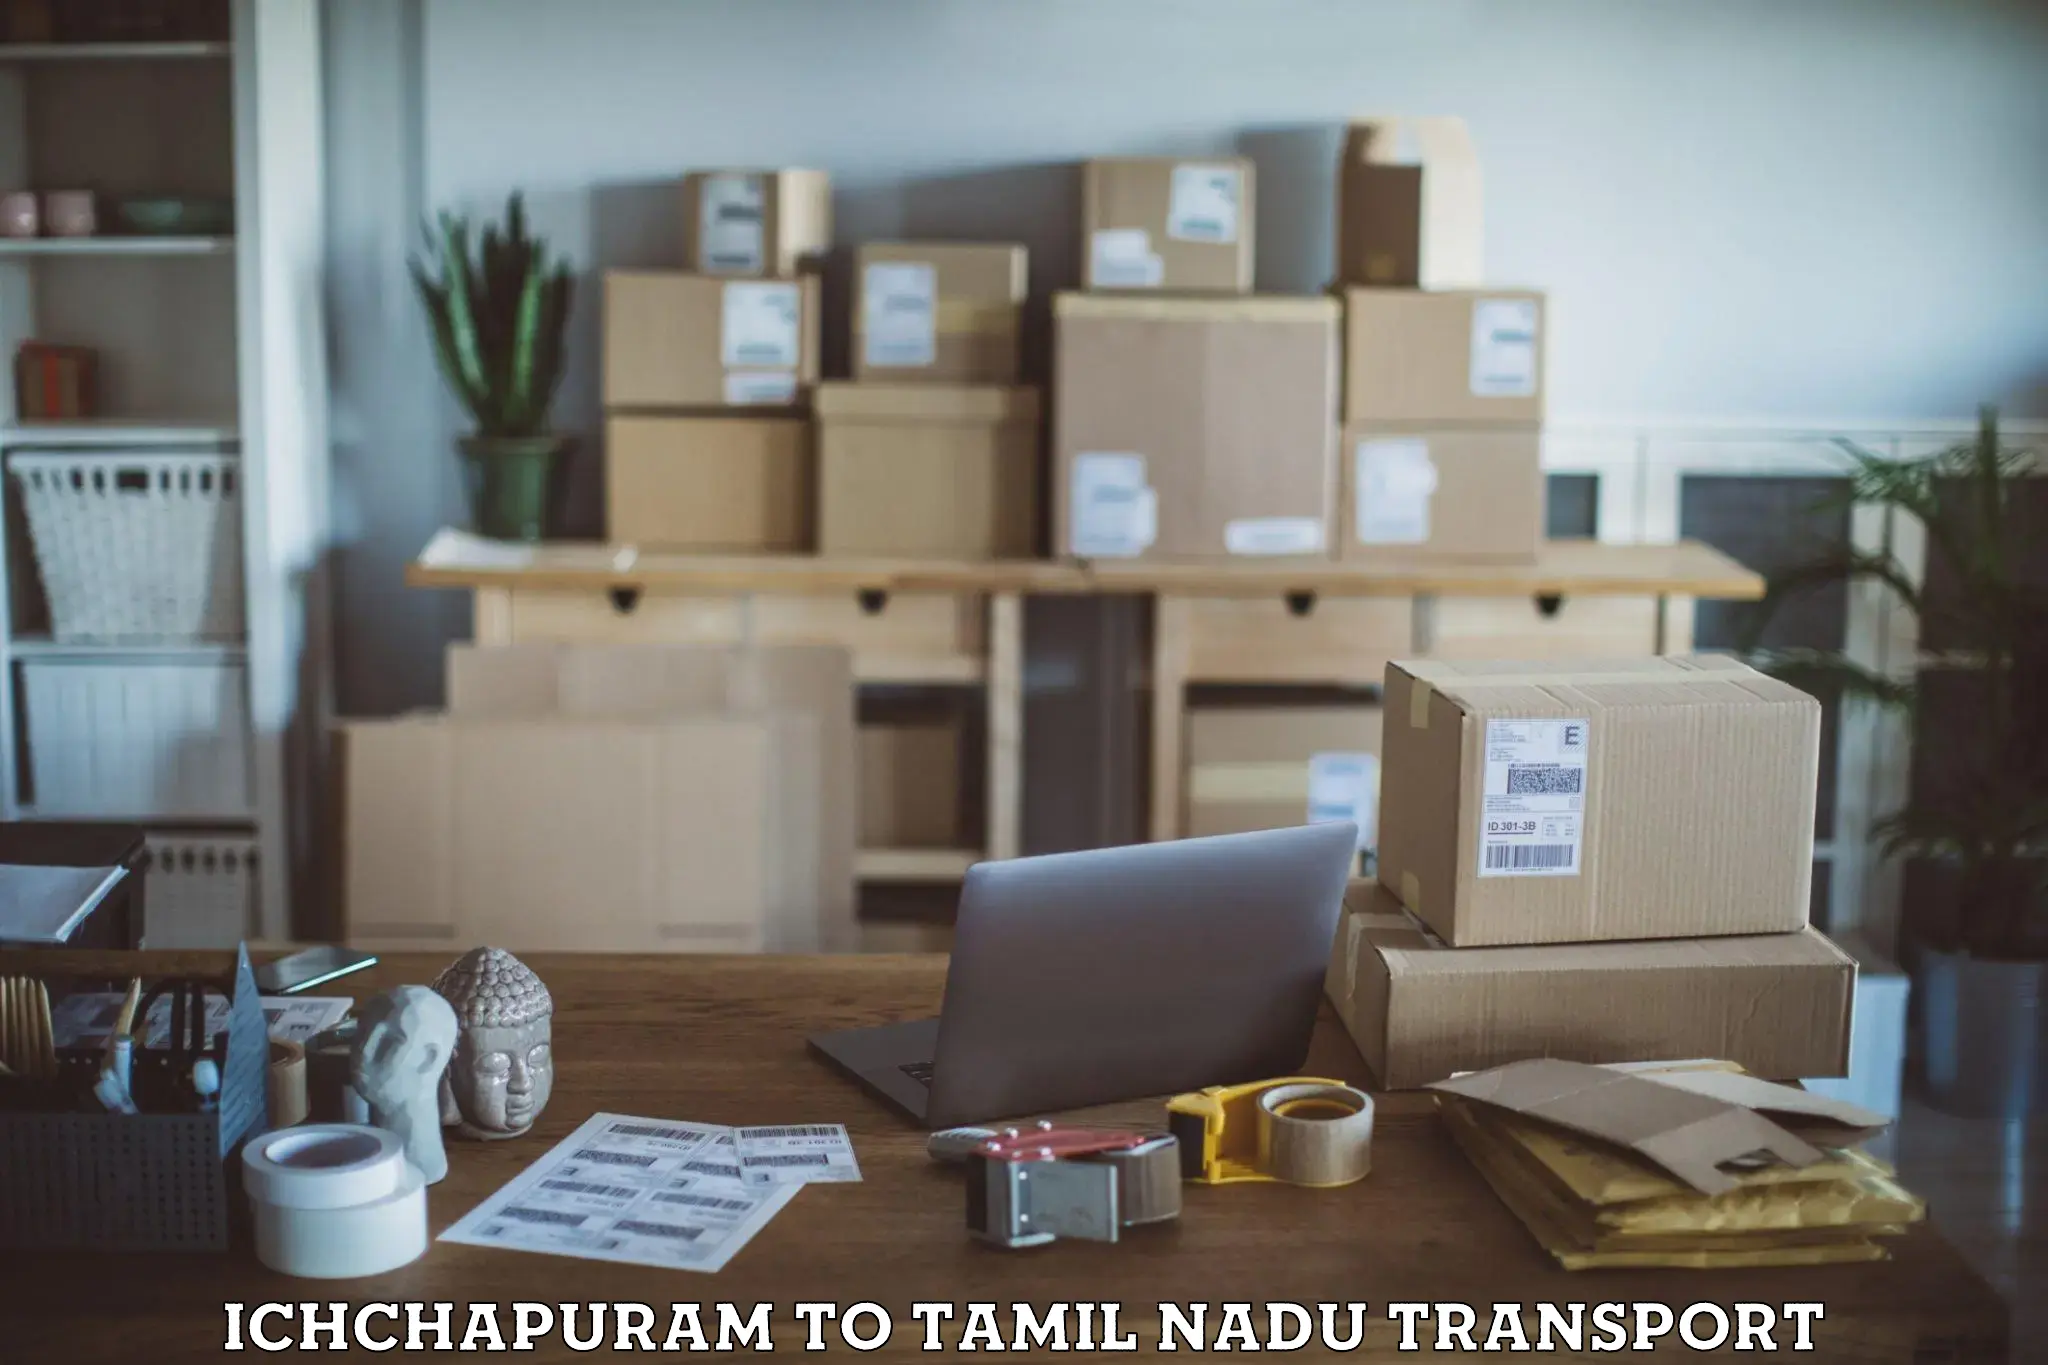 Transportation services Ichchapuram to Tamil Nadu